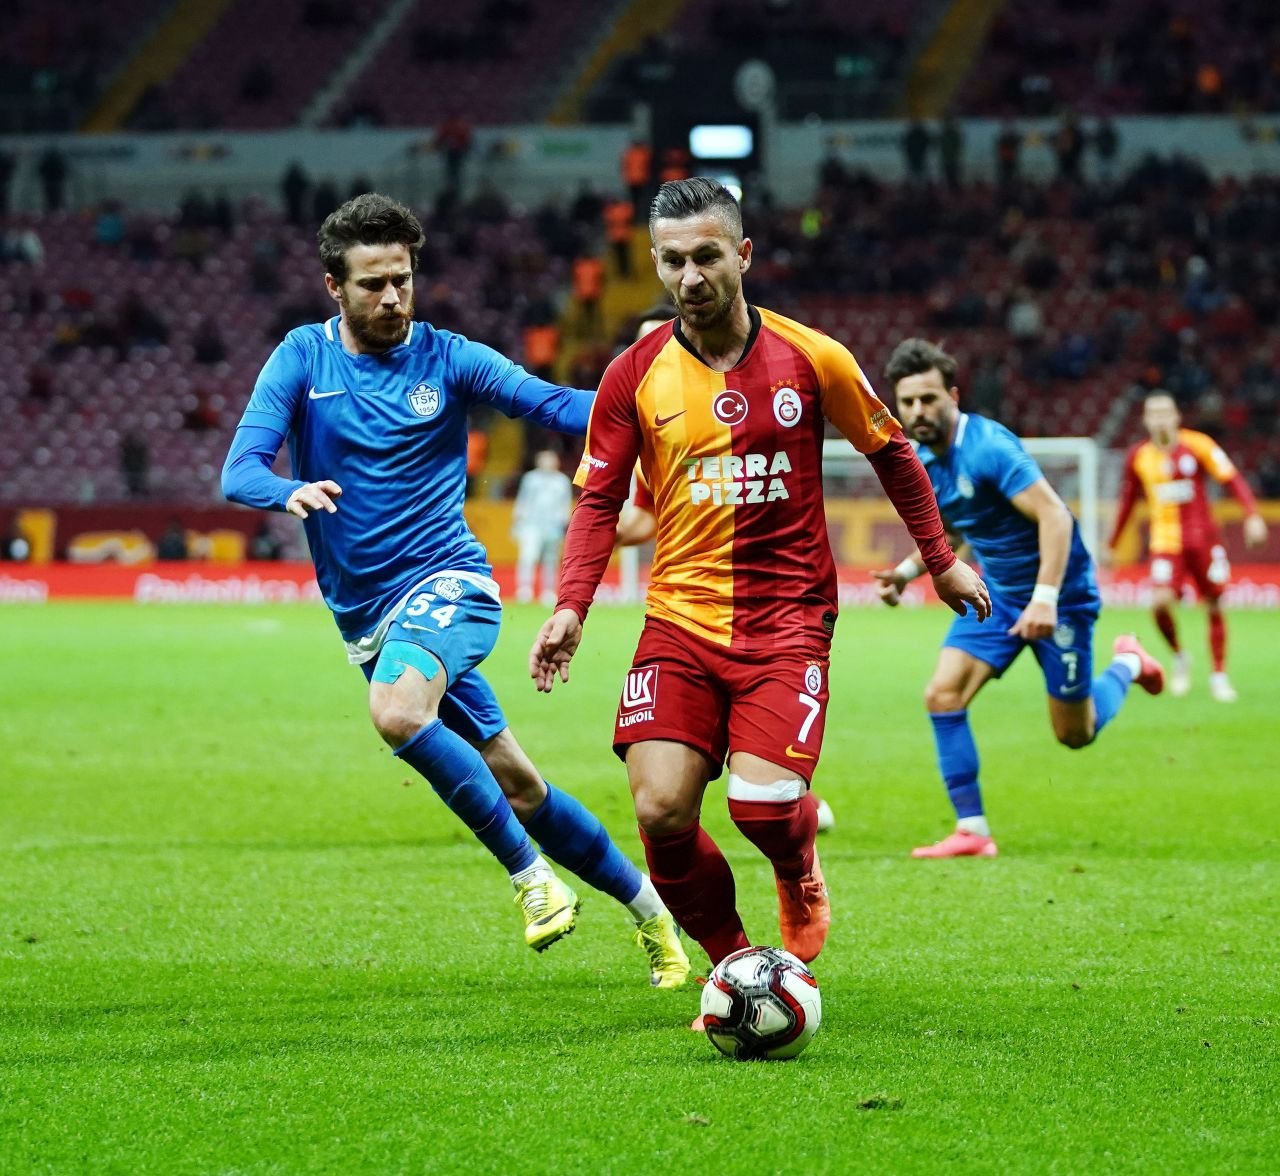 Gökhan Çıra Galatasaray'la dalga geçti kıyamet koptu